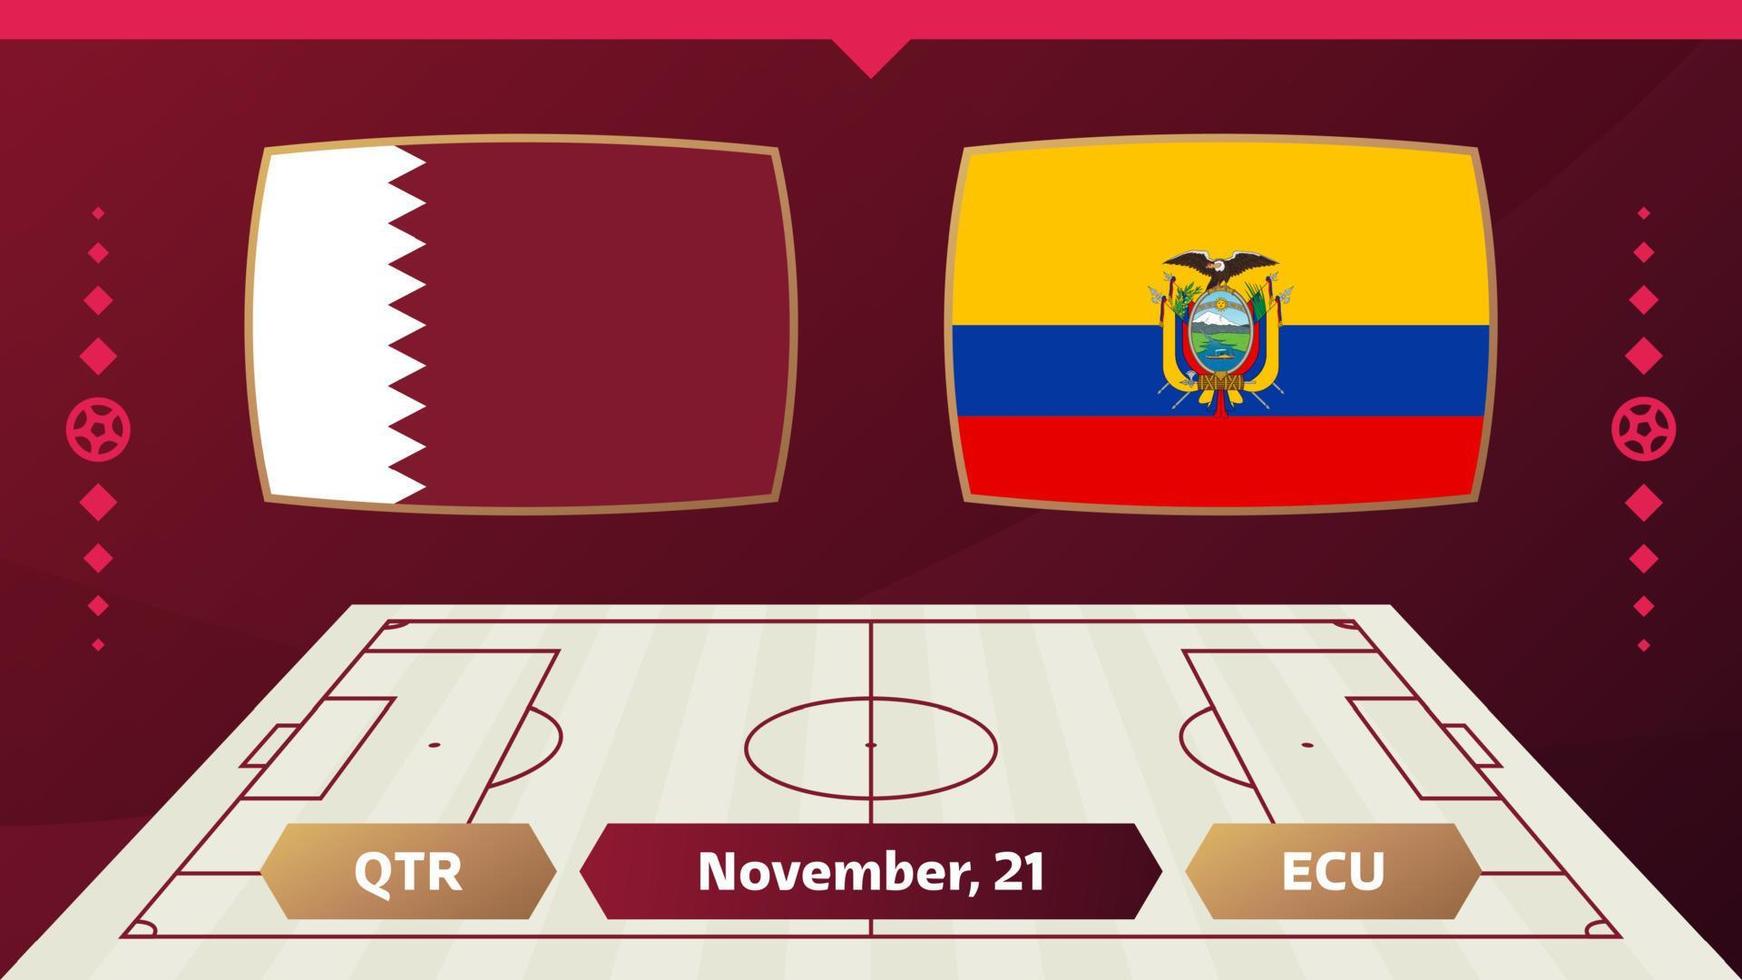 qatar vs ecuador, futbol 2022, grupo a. partido de campeonato mundial de fútbol versus antecedentes deportivos de introducción de equipos, afiche final de la competencia de campeonato, ilustración vectorial. vector